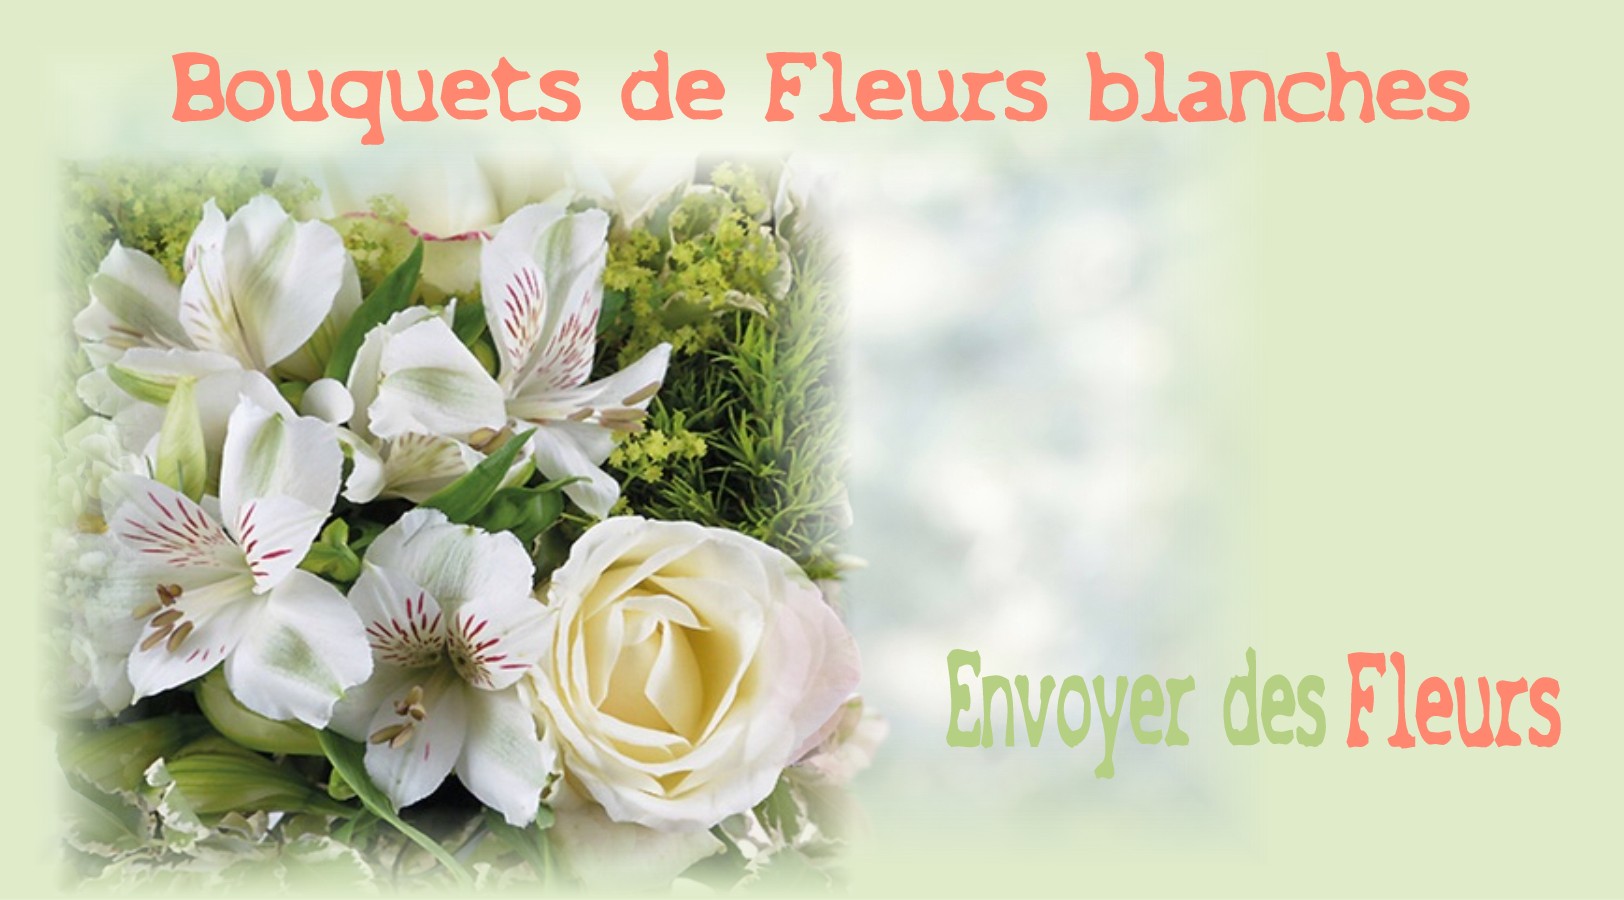 BOUQUETS DE FLEURS BLANCHES -FLEURISTE BORDEAUX (33) - ENVOYER DES FLEURS